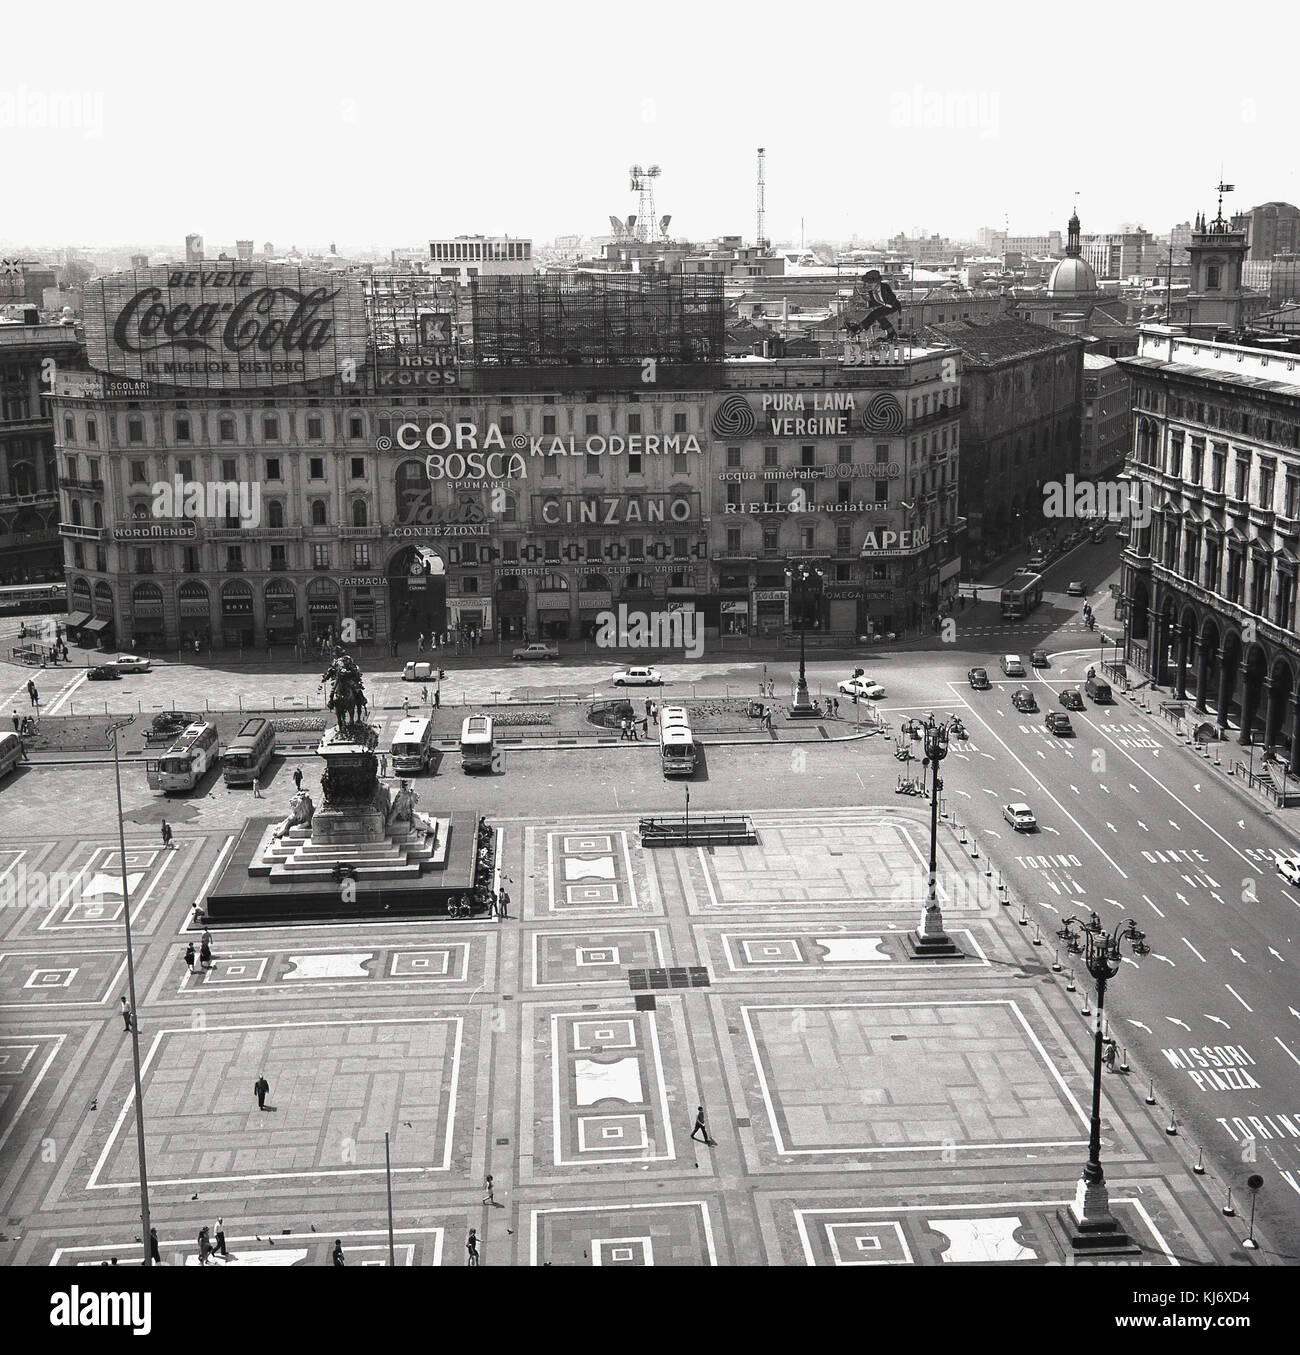 1950er Jahre, historischen Blick auf die Piazza del Duomo in Mailand, einer der faszinierendsten Plätze in Italien und in dieser Zeit ein Ort, an dem große Unternehmen ihre Produkte wie Coca-Cola und Cinzano beworben. Stockfoto